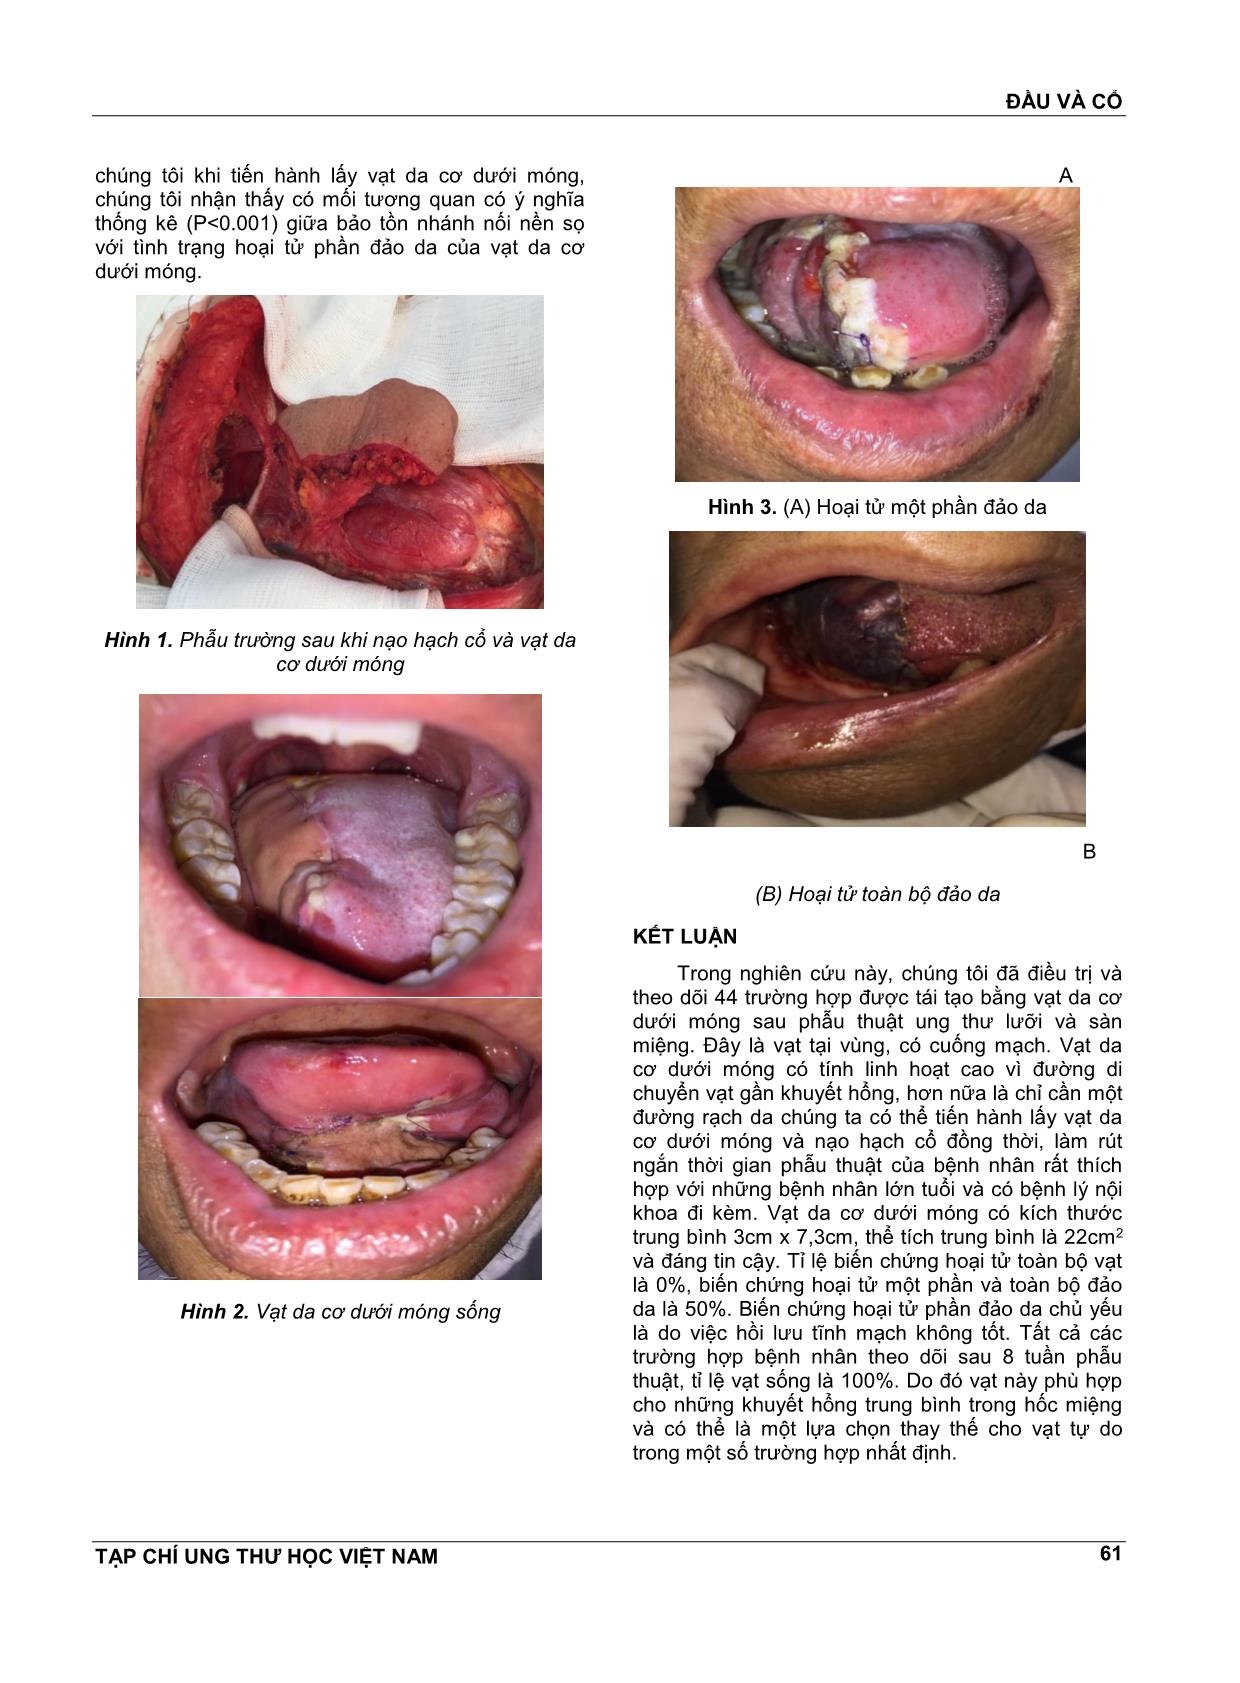 Sử dụng vạt da cơ dưới móng trong tạo hình ung thư lưỡi và sàn miệng trang 4